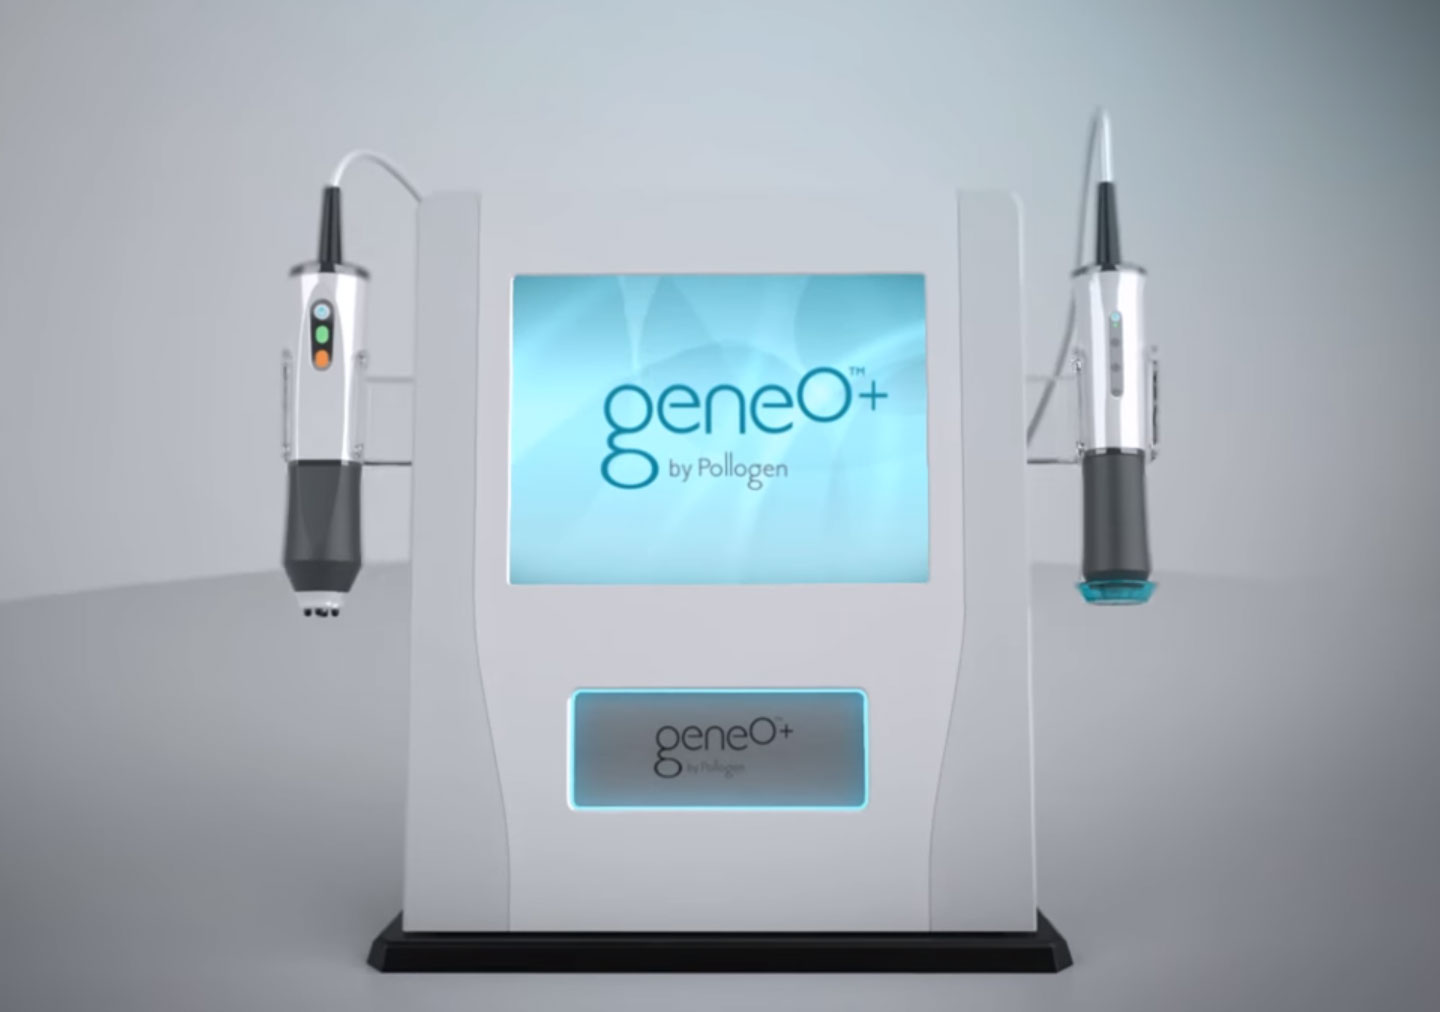 geneO+ by Pollogen